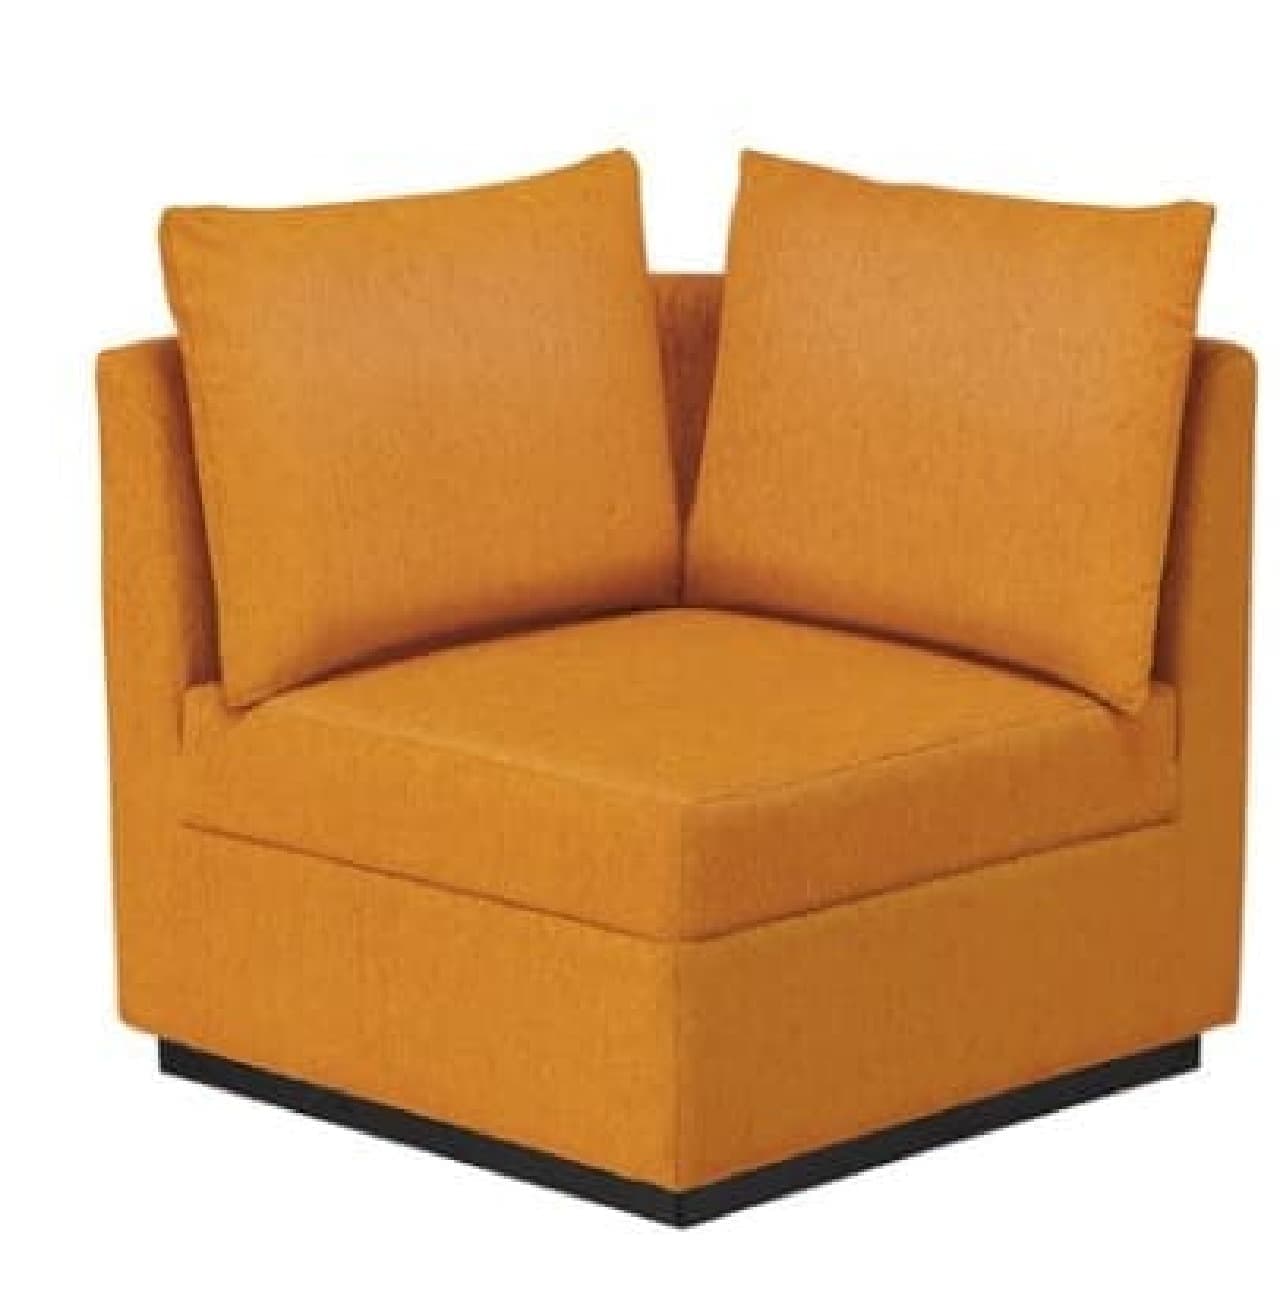 Corner upholstered sofa yellow